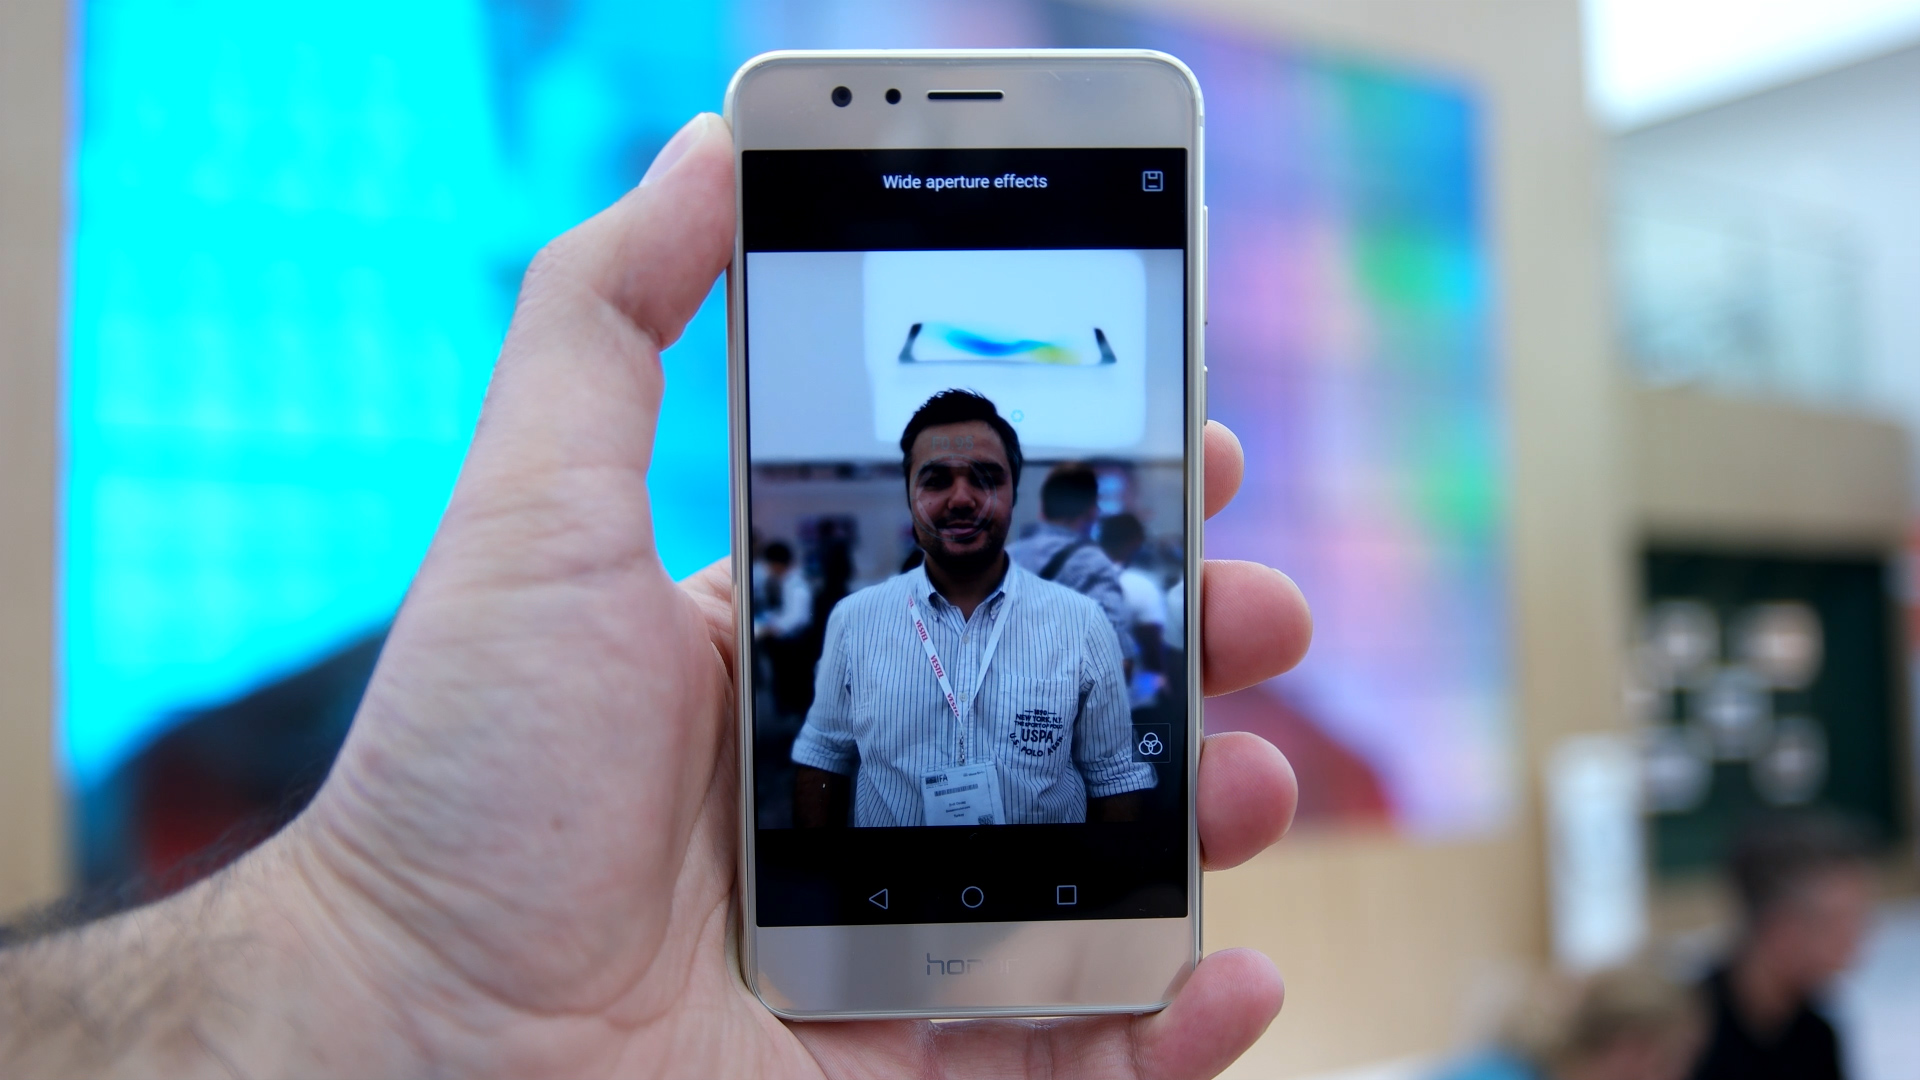 Huawei Honor 8 ön inceleme videosu 'Çift kamerasıyla iddialı'